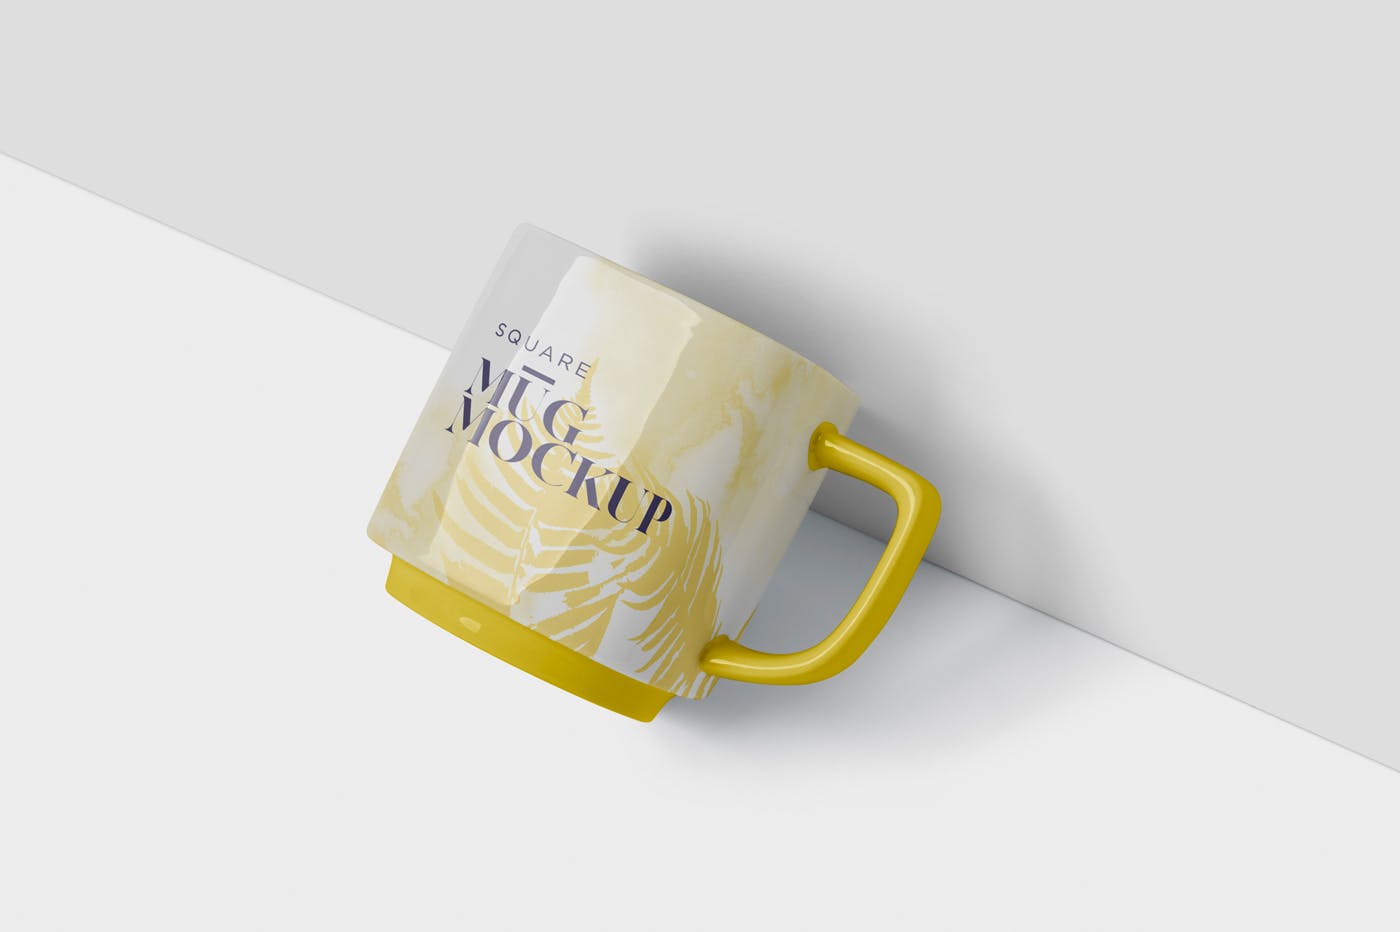 方形马克杯图案设计第一素材精选模板 Mug Mockup – Square Shaped插图(2)